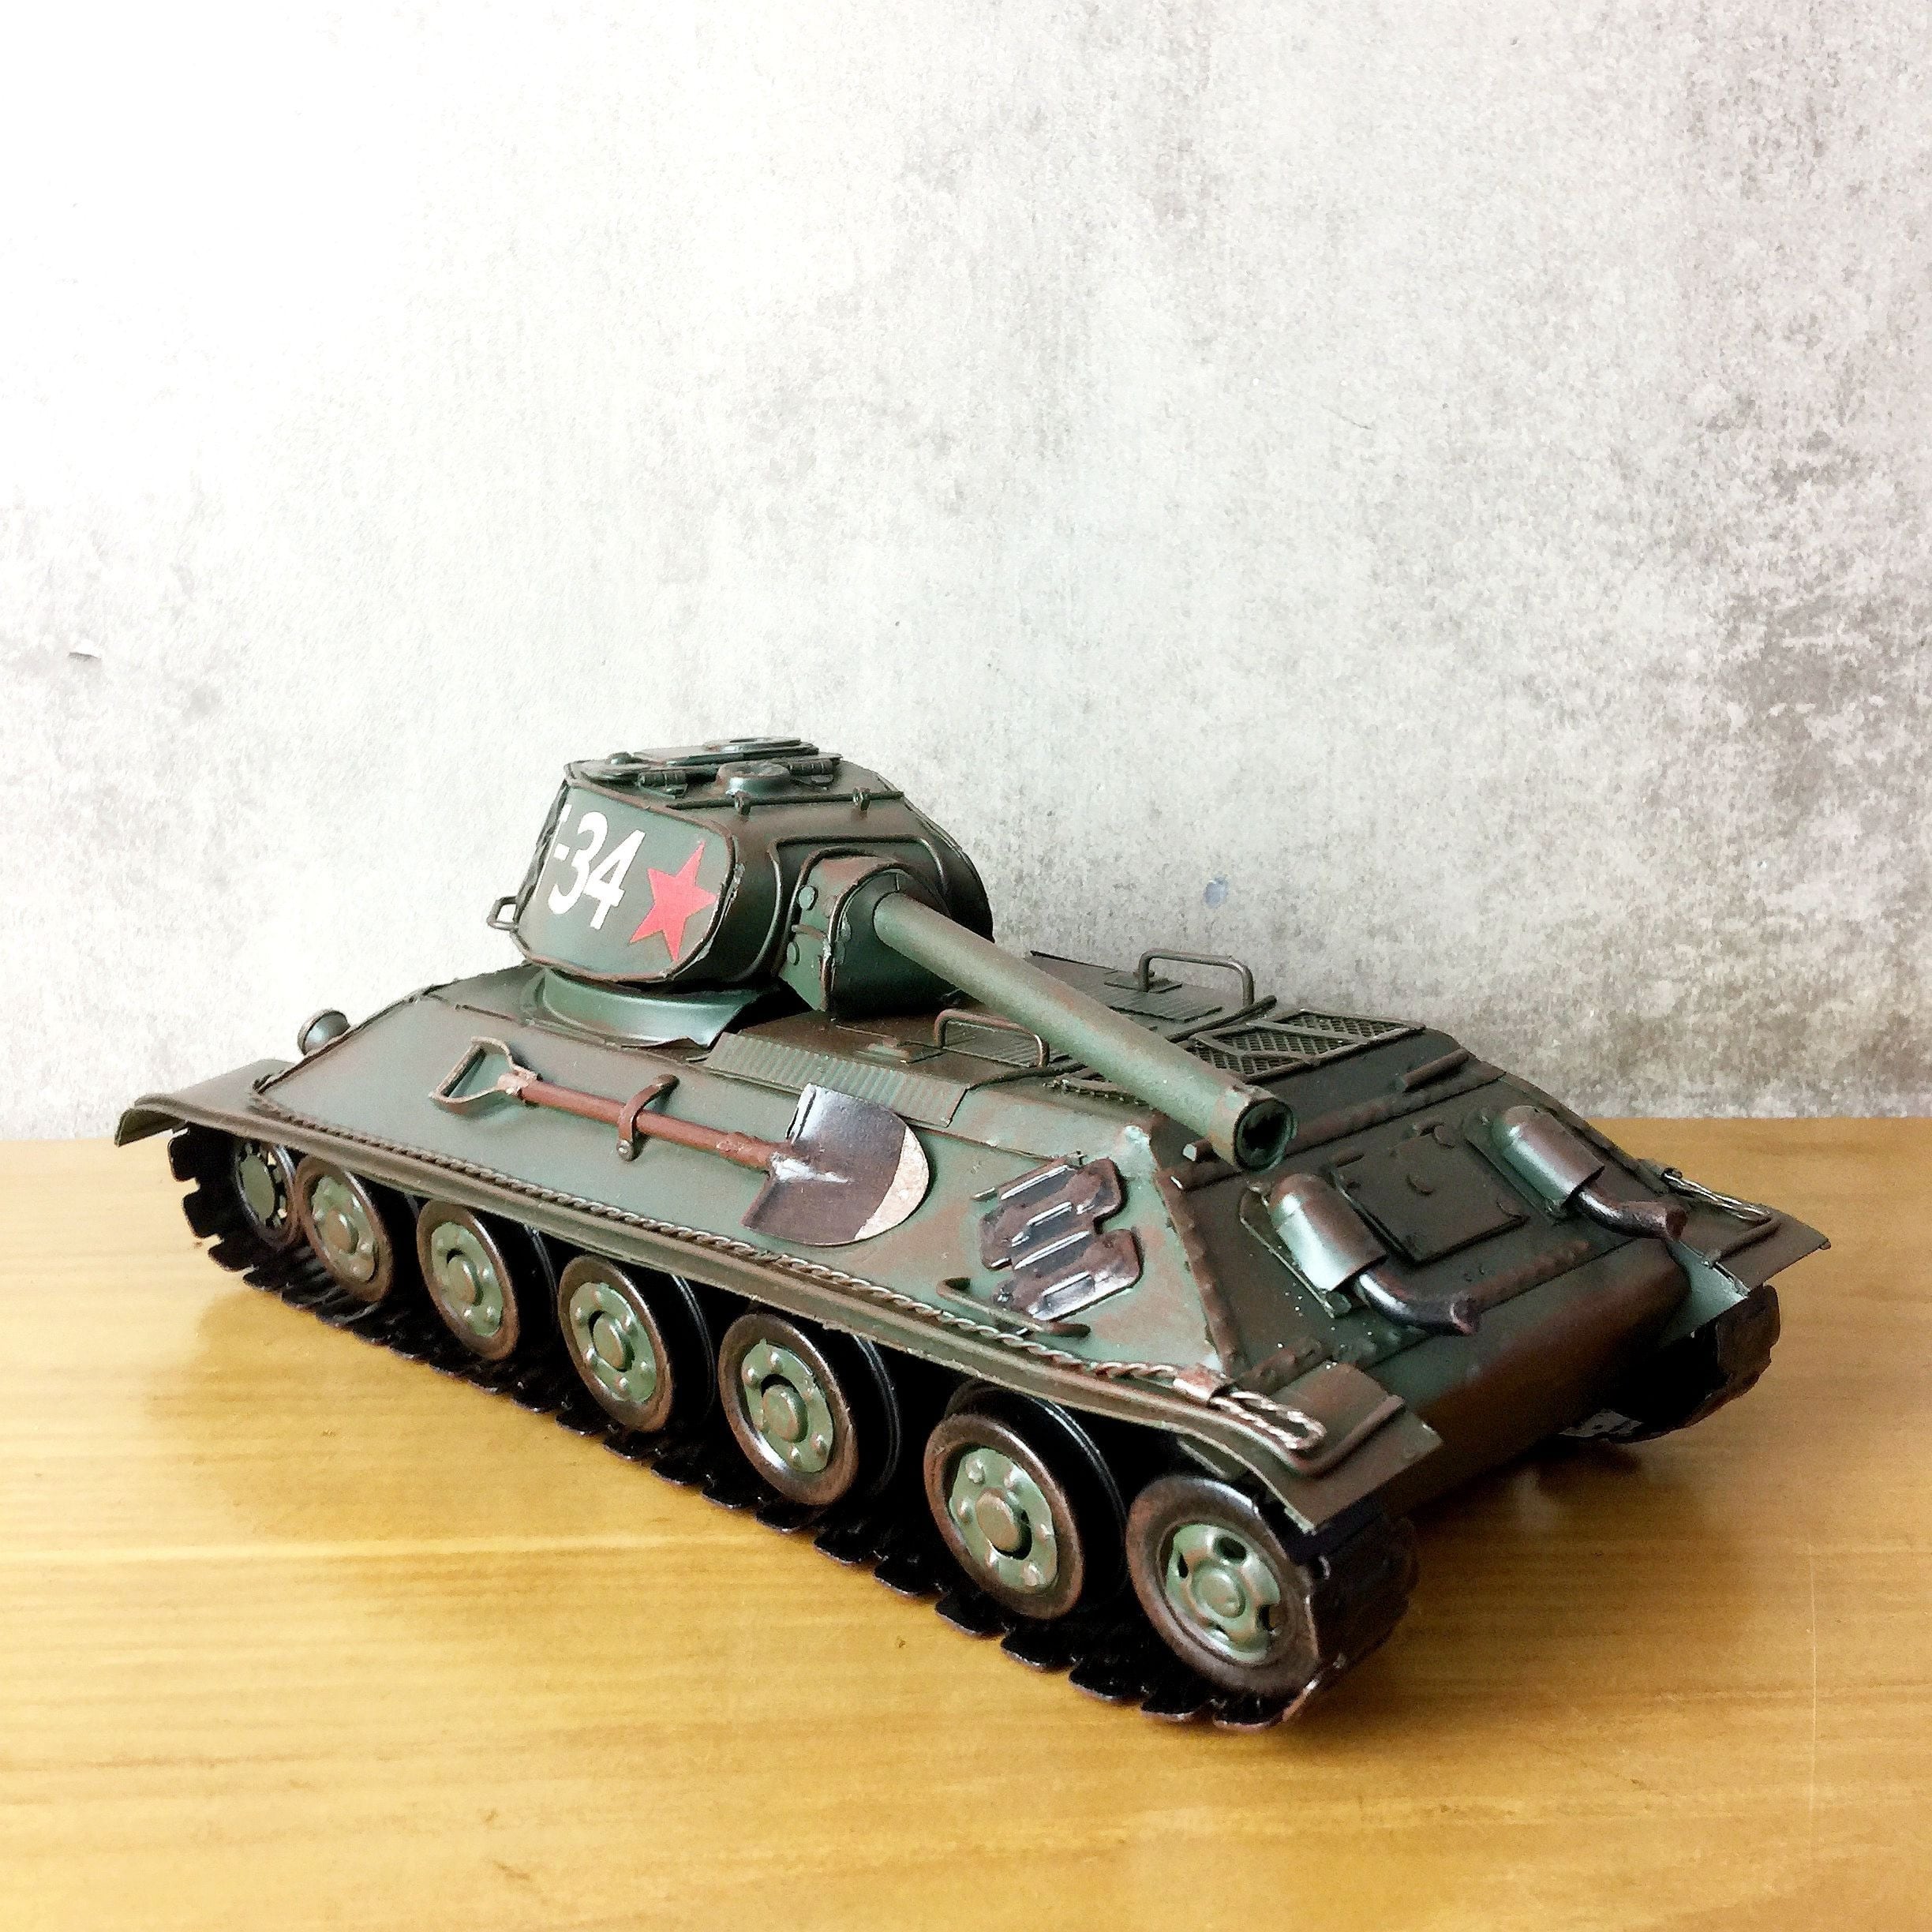 特大 メタル ブリキ 玩具 おもちゃ ミリタリー 戦車 タンク Tank 兵器